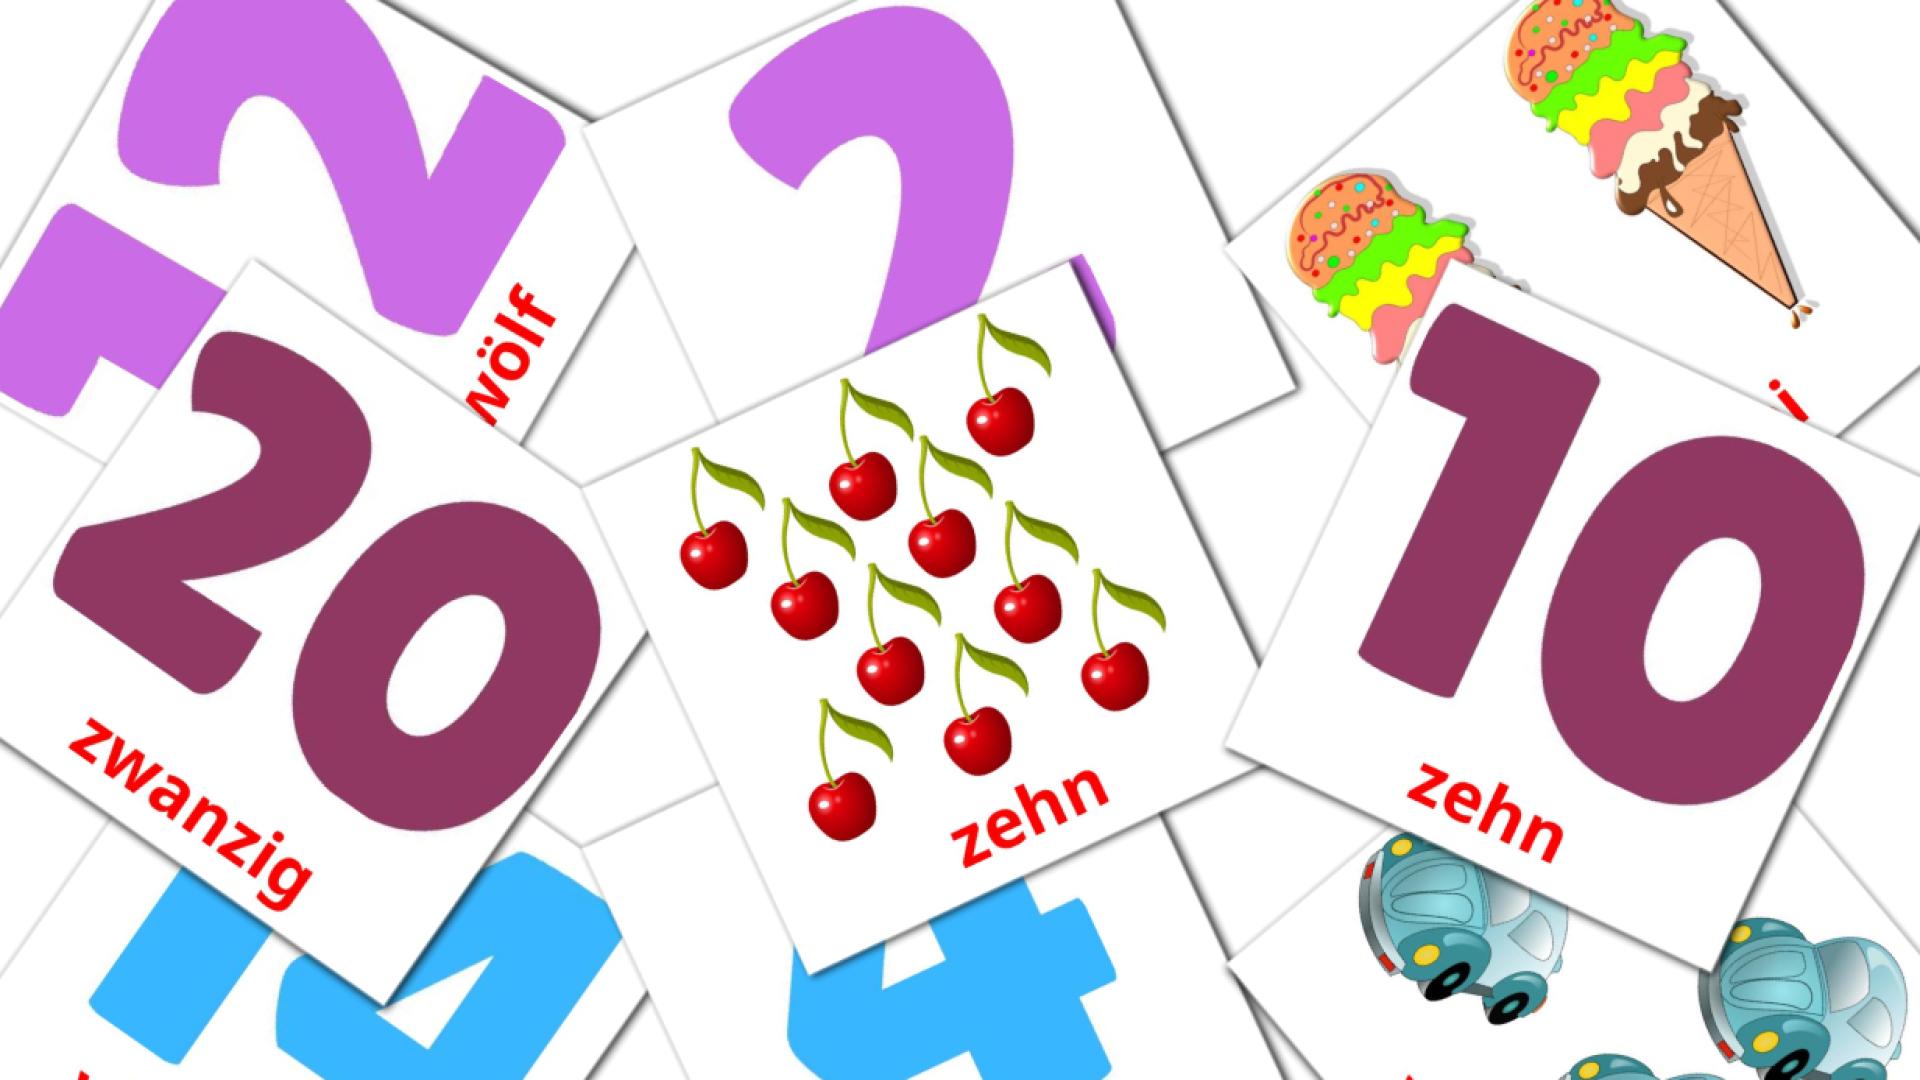 Farsi Mathematike Vokabelkarteikarten